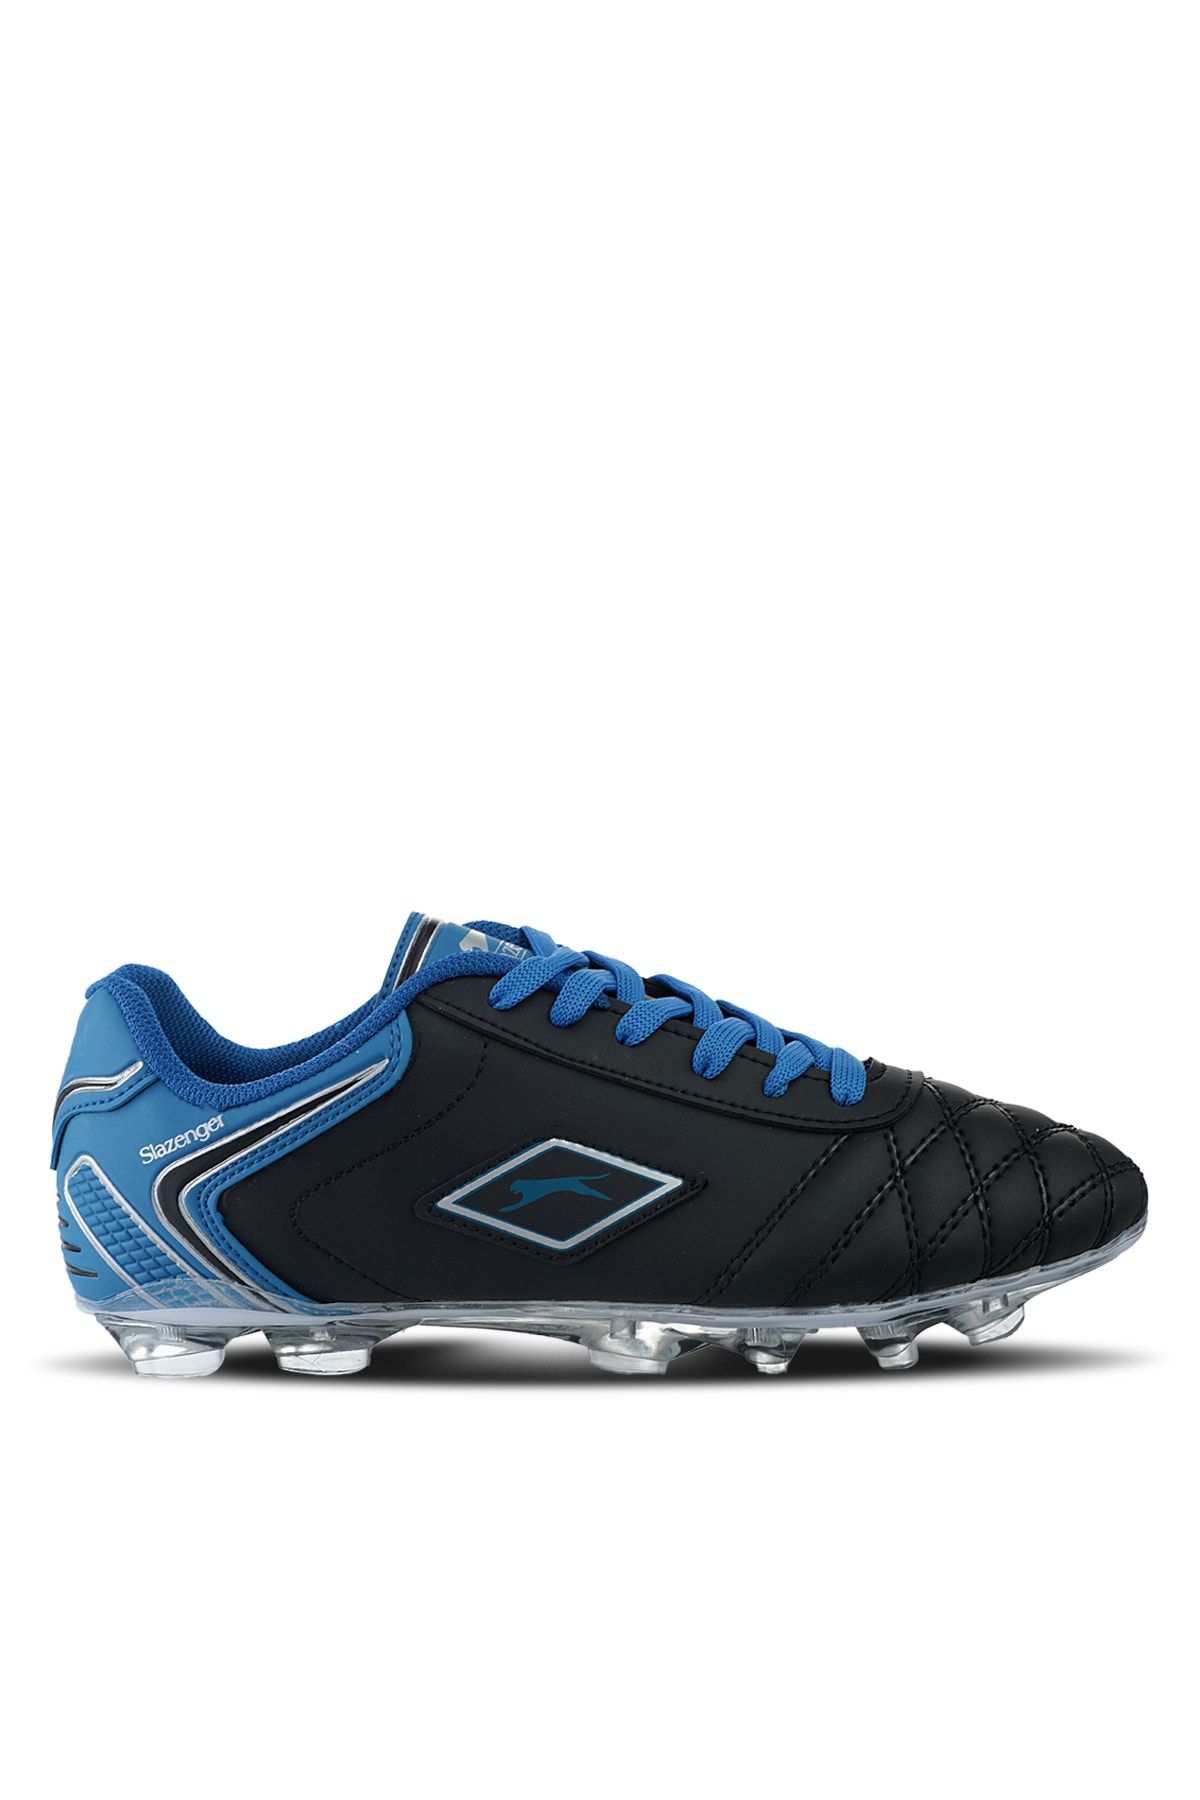 Slazenger Hugo Krampon Futbol Erkek Krampon Ayakkabı Siyah / Mavi